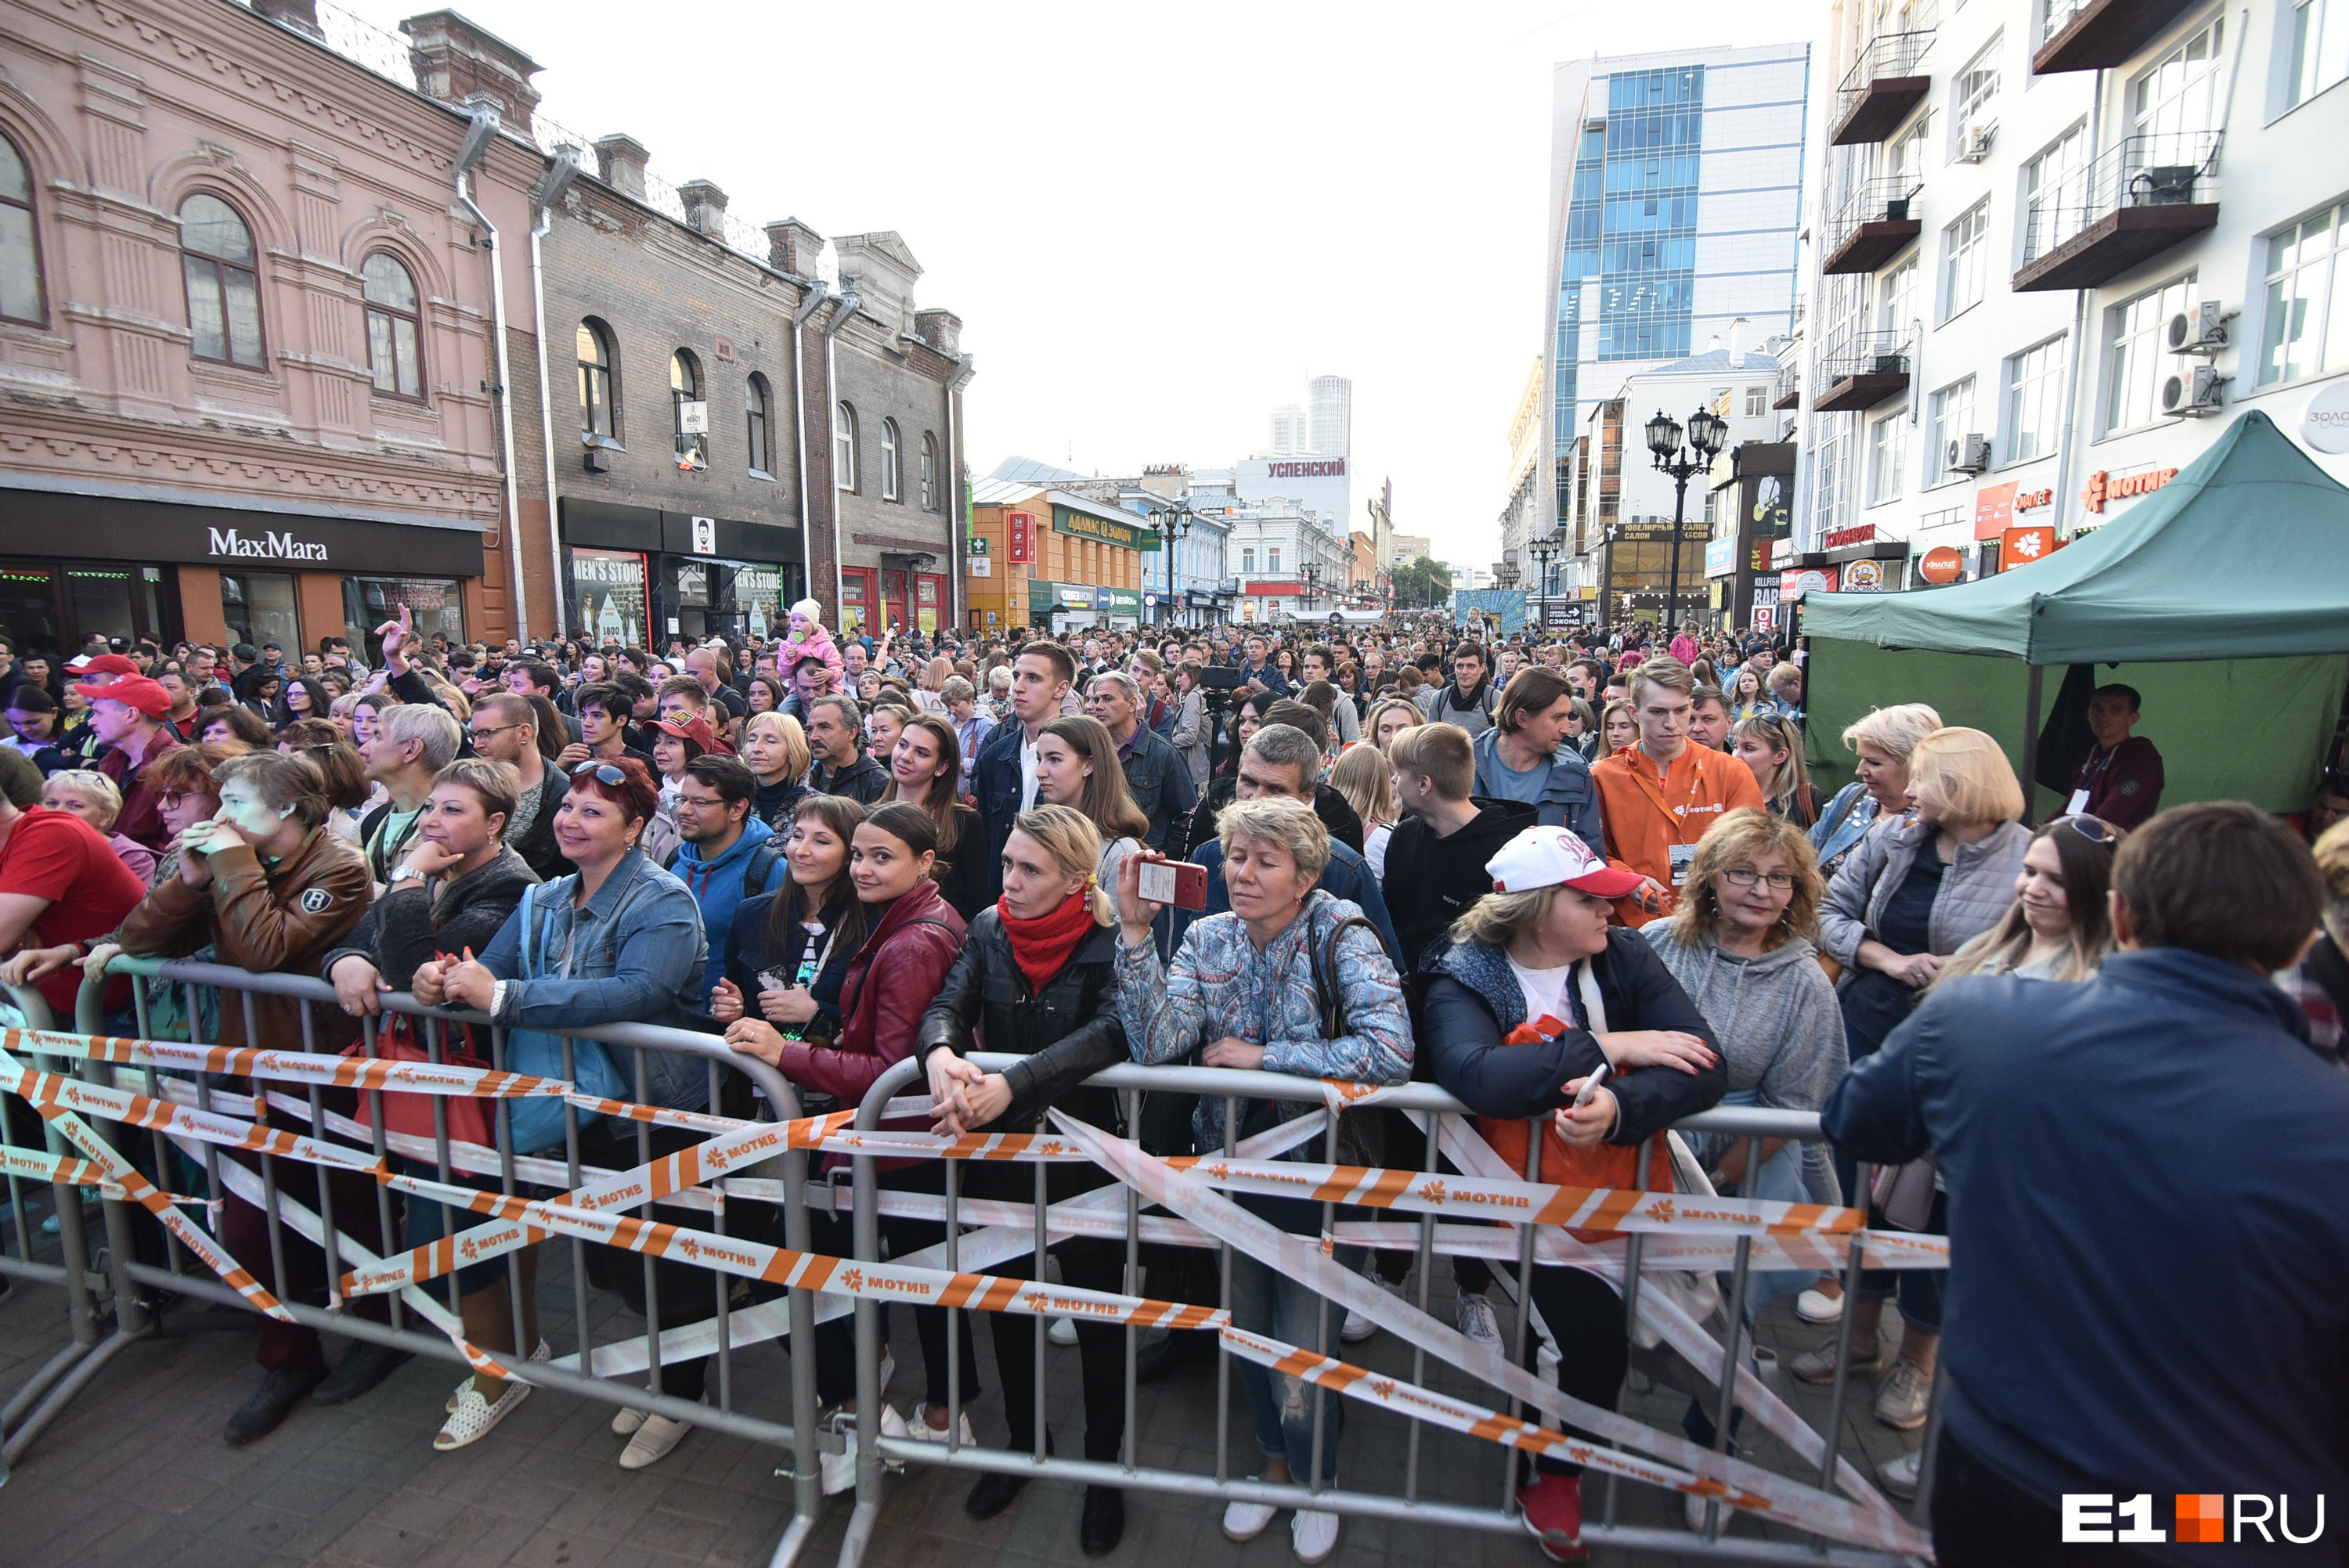 Еще не стемнело, а толпы народа уже заполонили центр Екатеринбурга